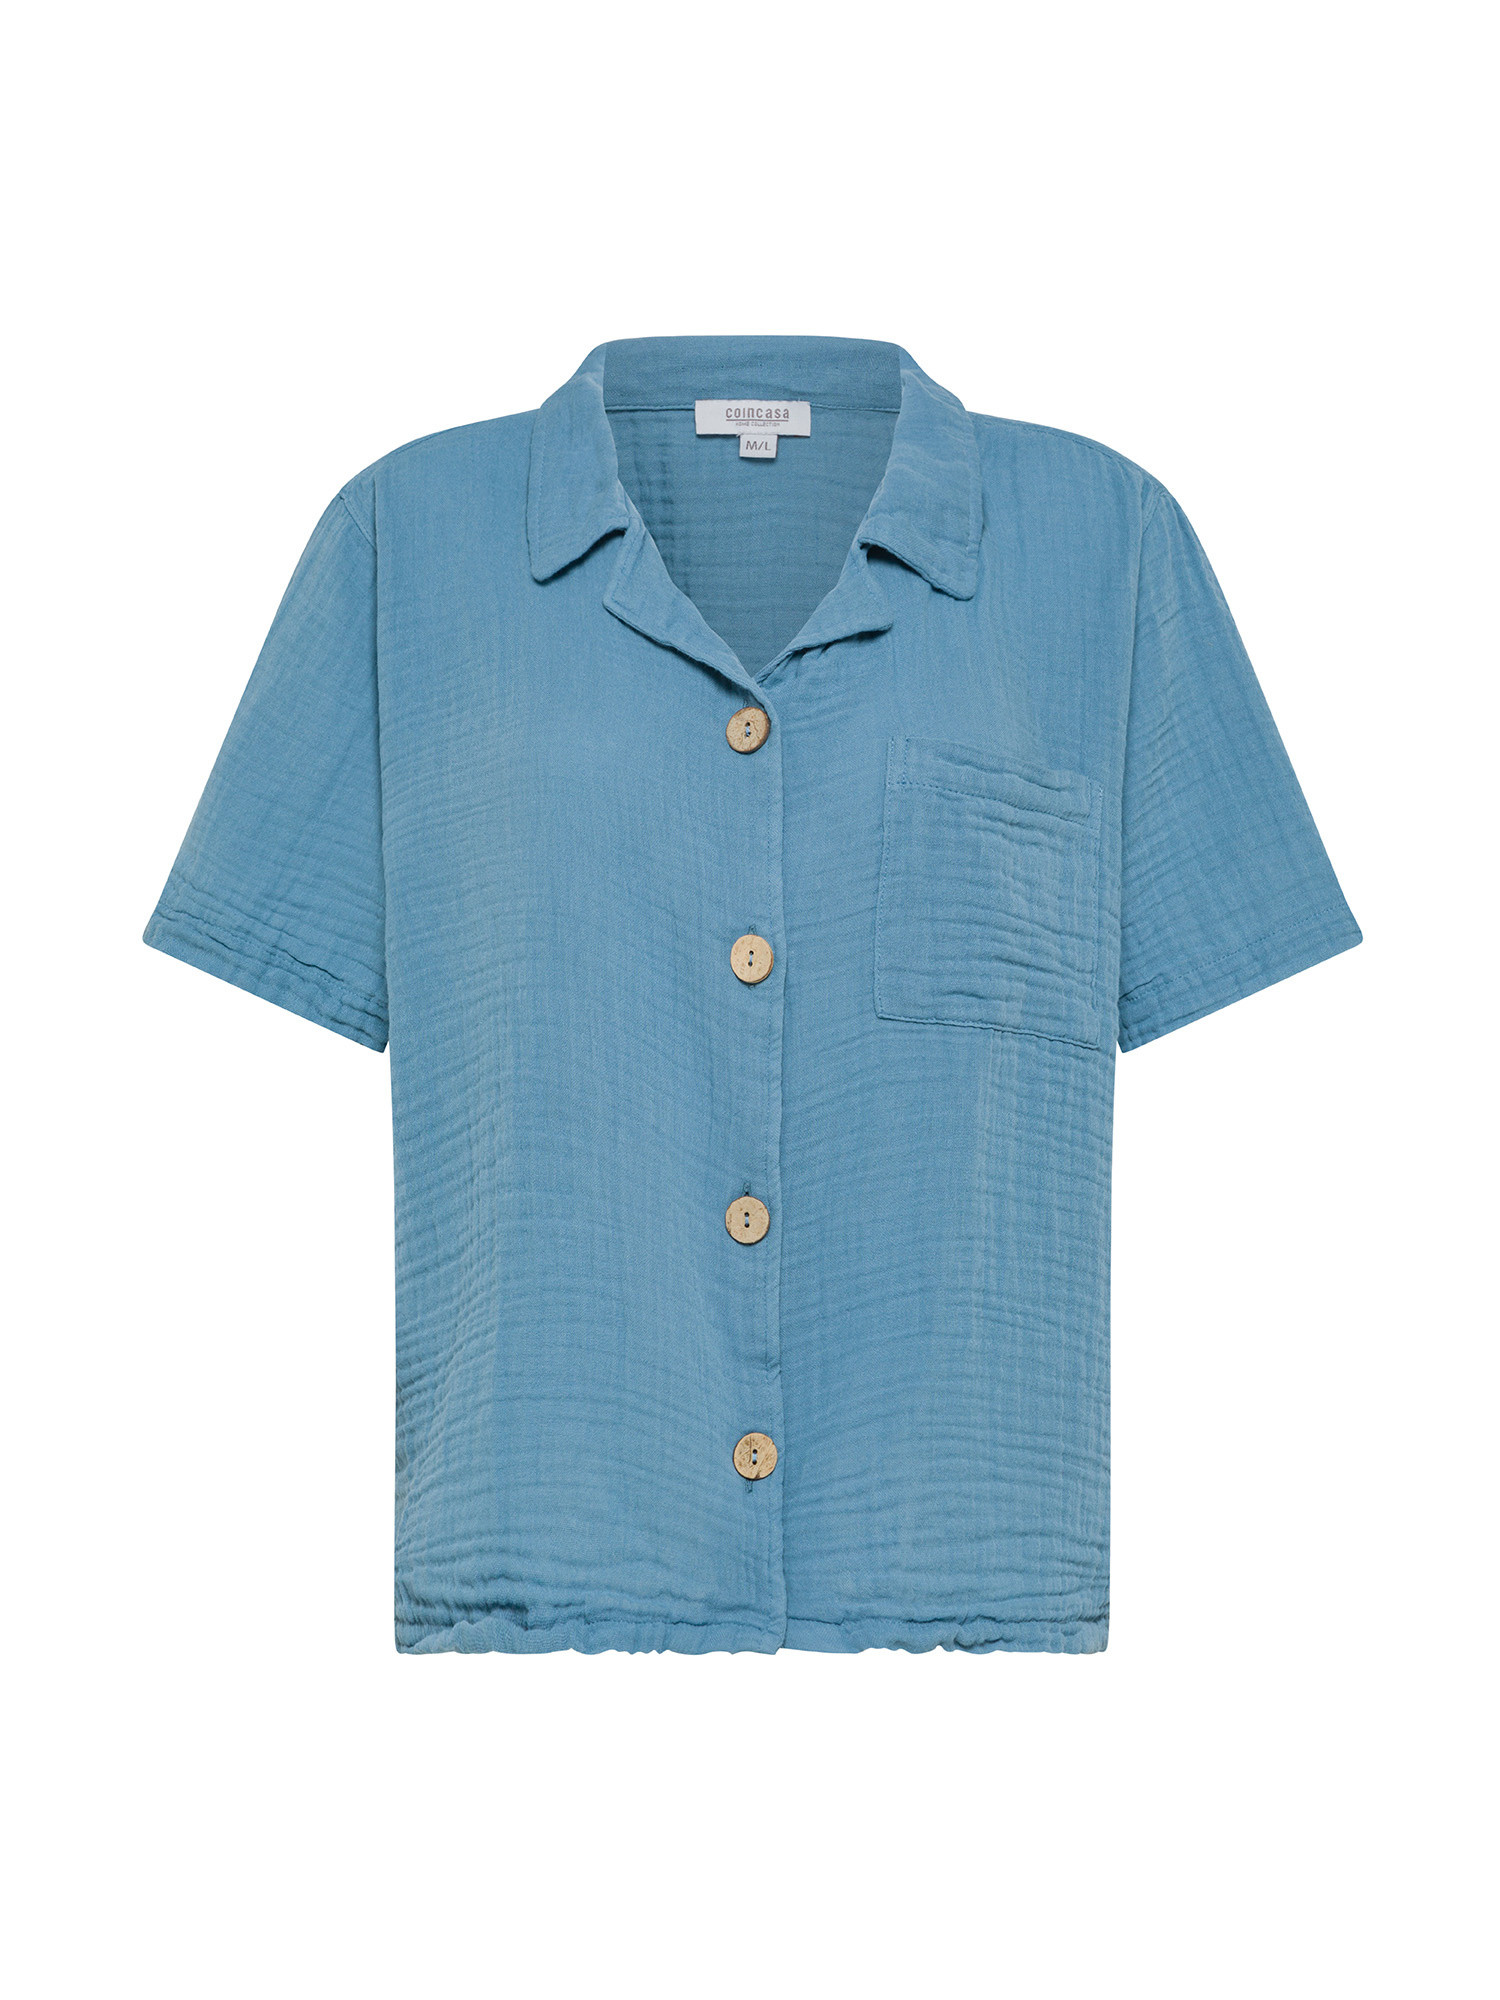 Half-sleeved cotton muslin shirt., Light Blue, large image number 0